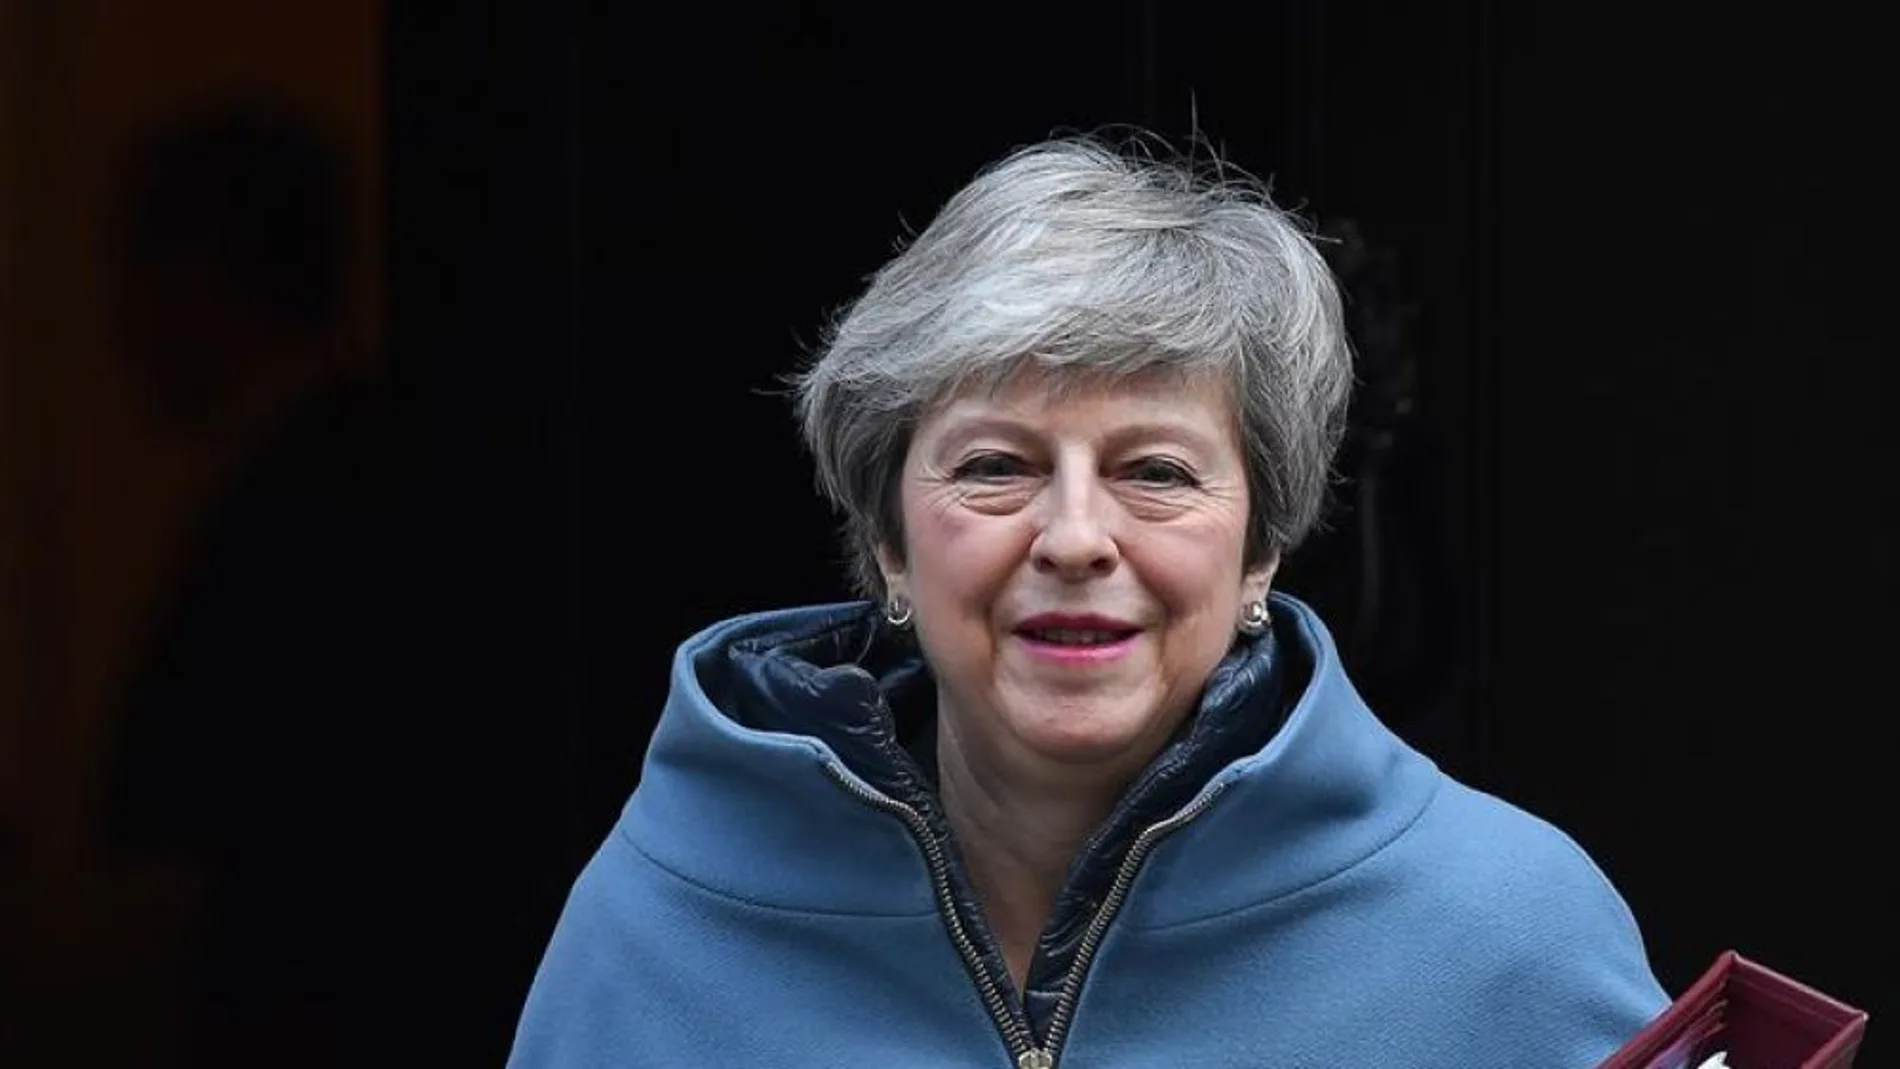 laSexta Noticias 20:00 (27-03-19) Theresa May dimitirá a cambio de que apoyen su acuerdo de Brexit